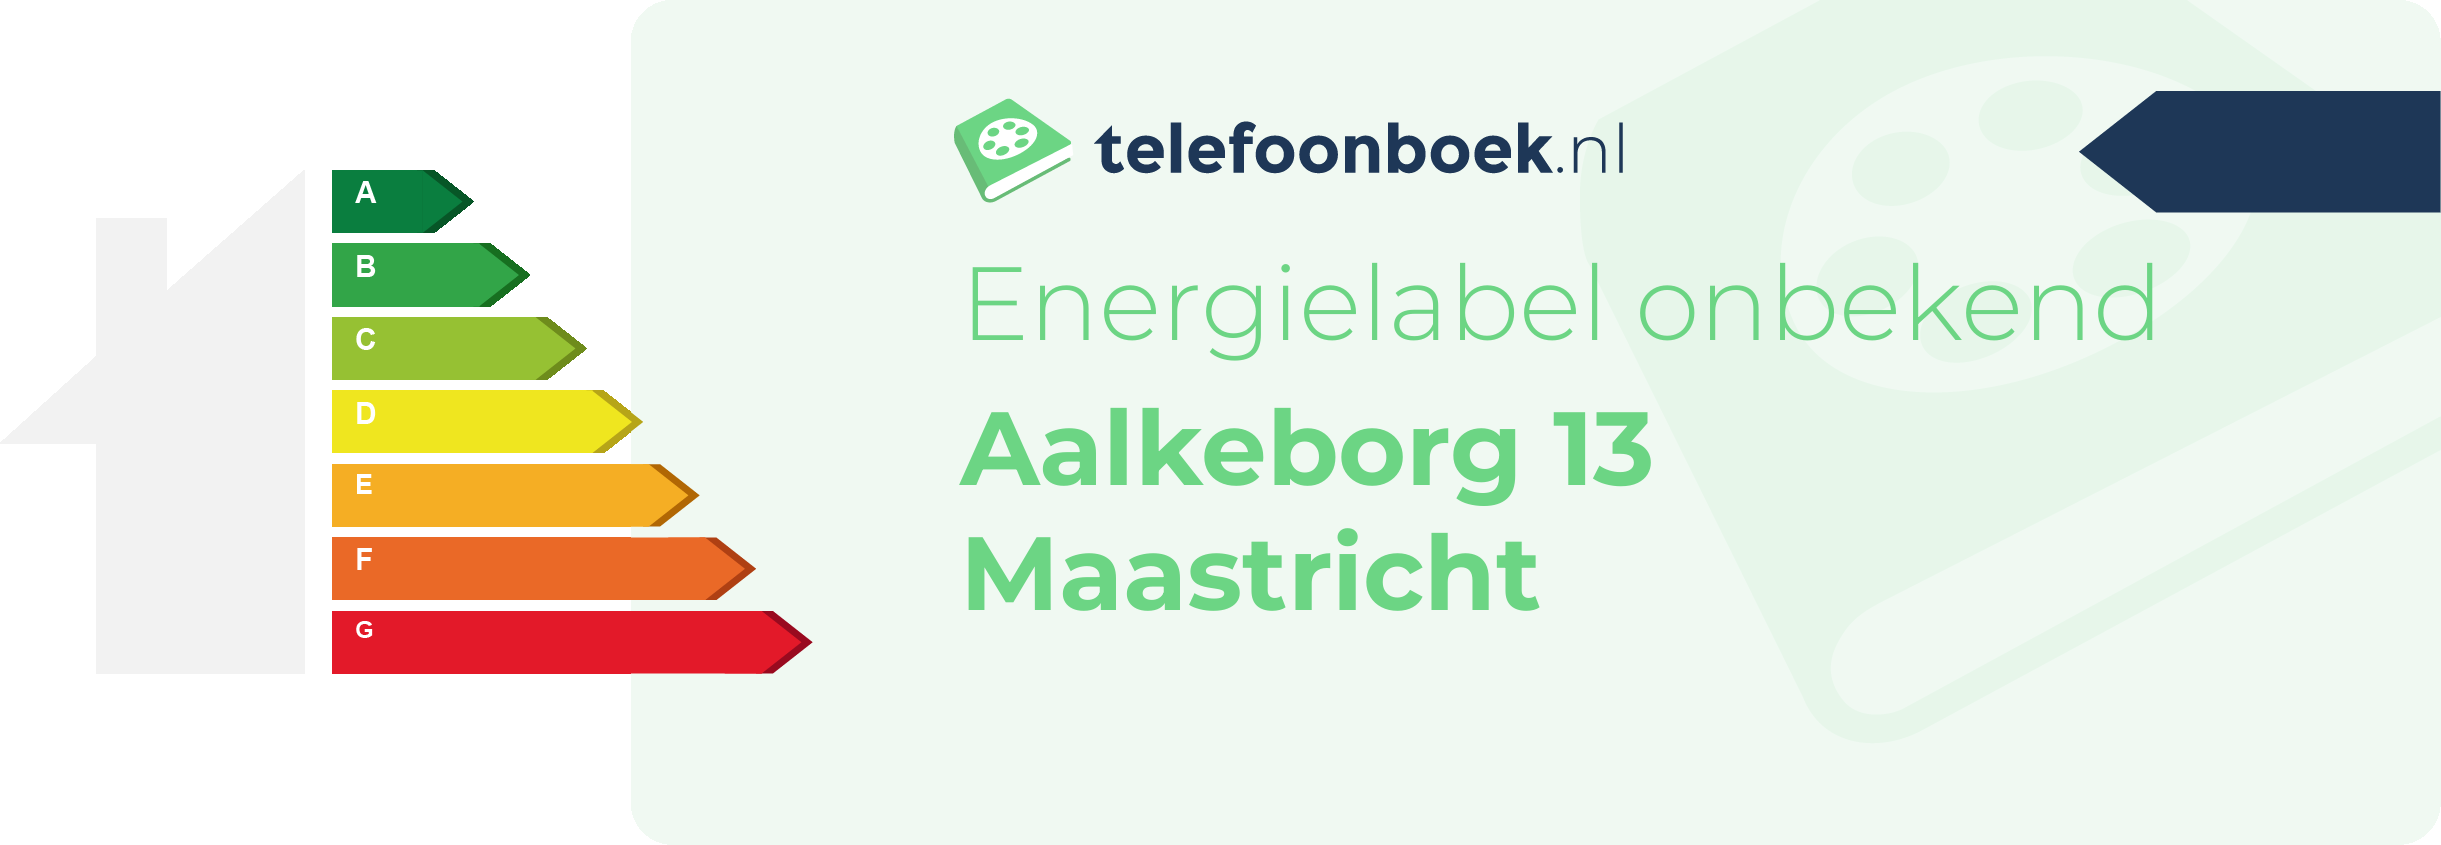 Energielabel Aalkeborg 13 Maastricht